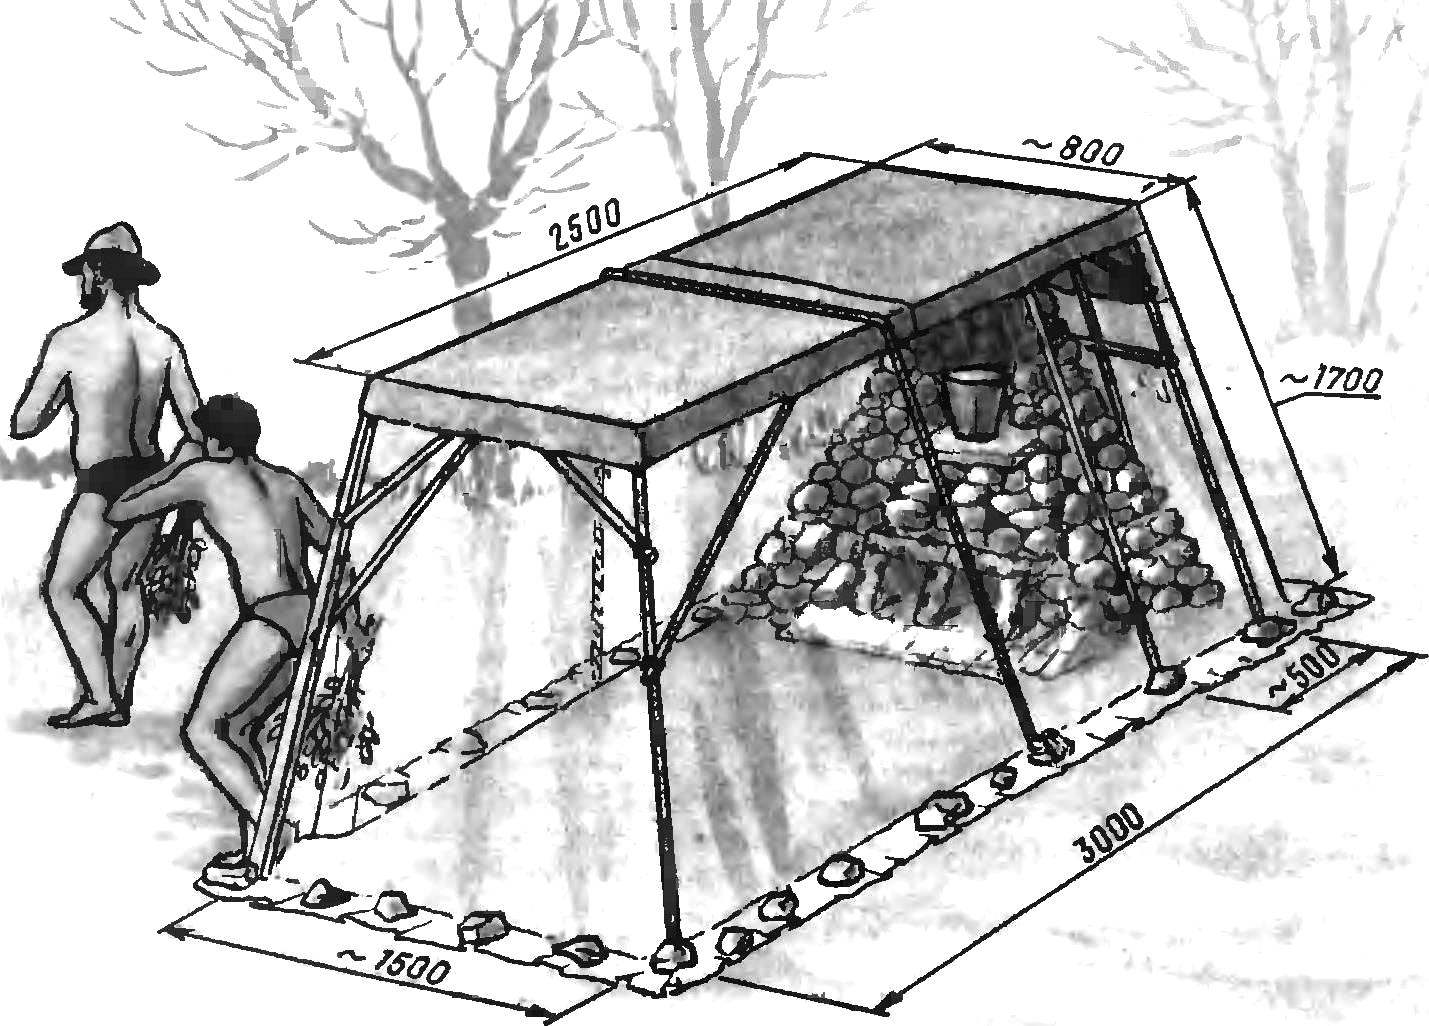 Походная баня - делаем своими руками из палатки и полиэтилена: видео, фото, выкройки и чертежи